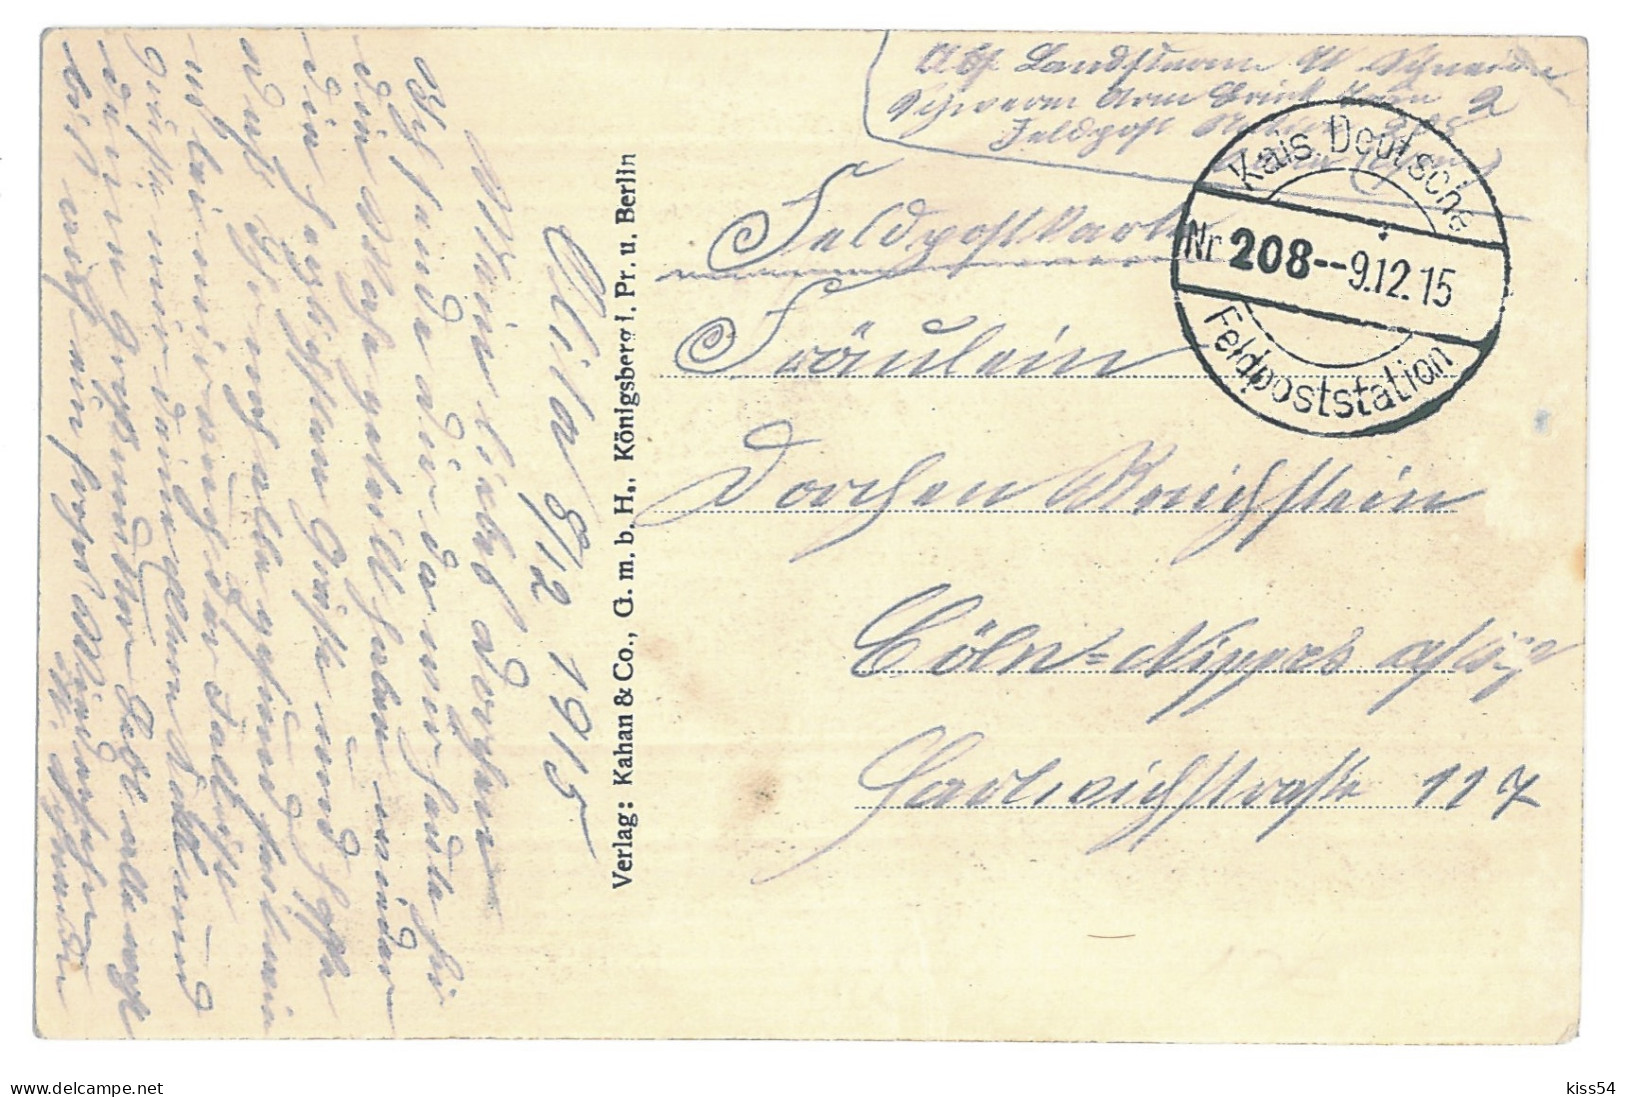 BL 31 - 13982 GRODNO, Belarus, Military Convoy - Old Postcard, CENSOR - Used - 1915 - Weißrussland